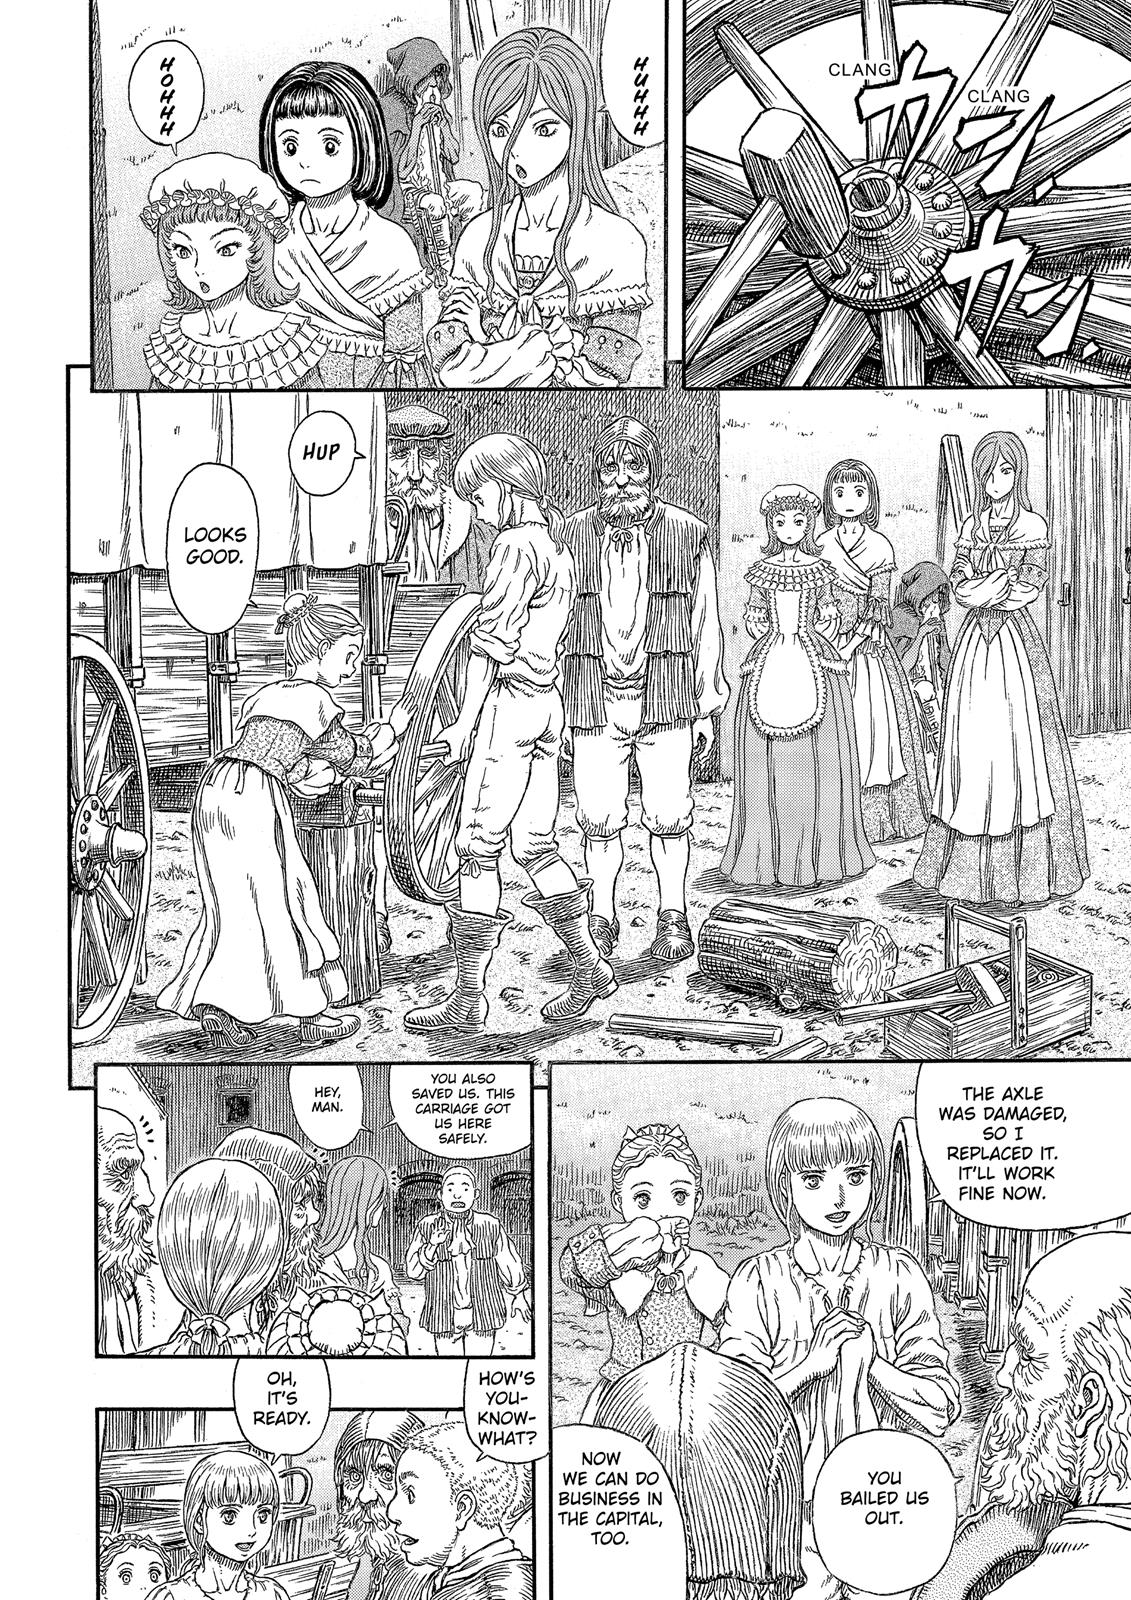 Berserk Manga Chapter 338 image 05